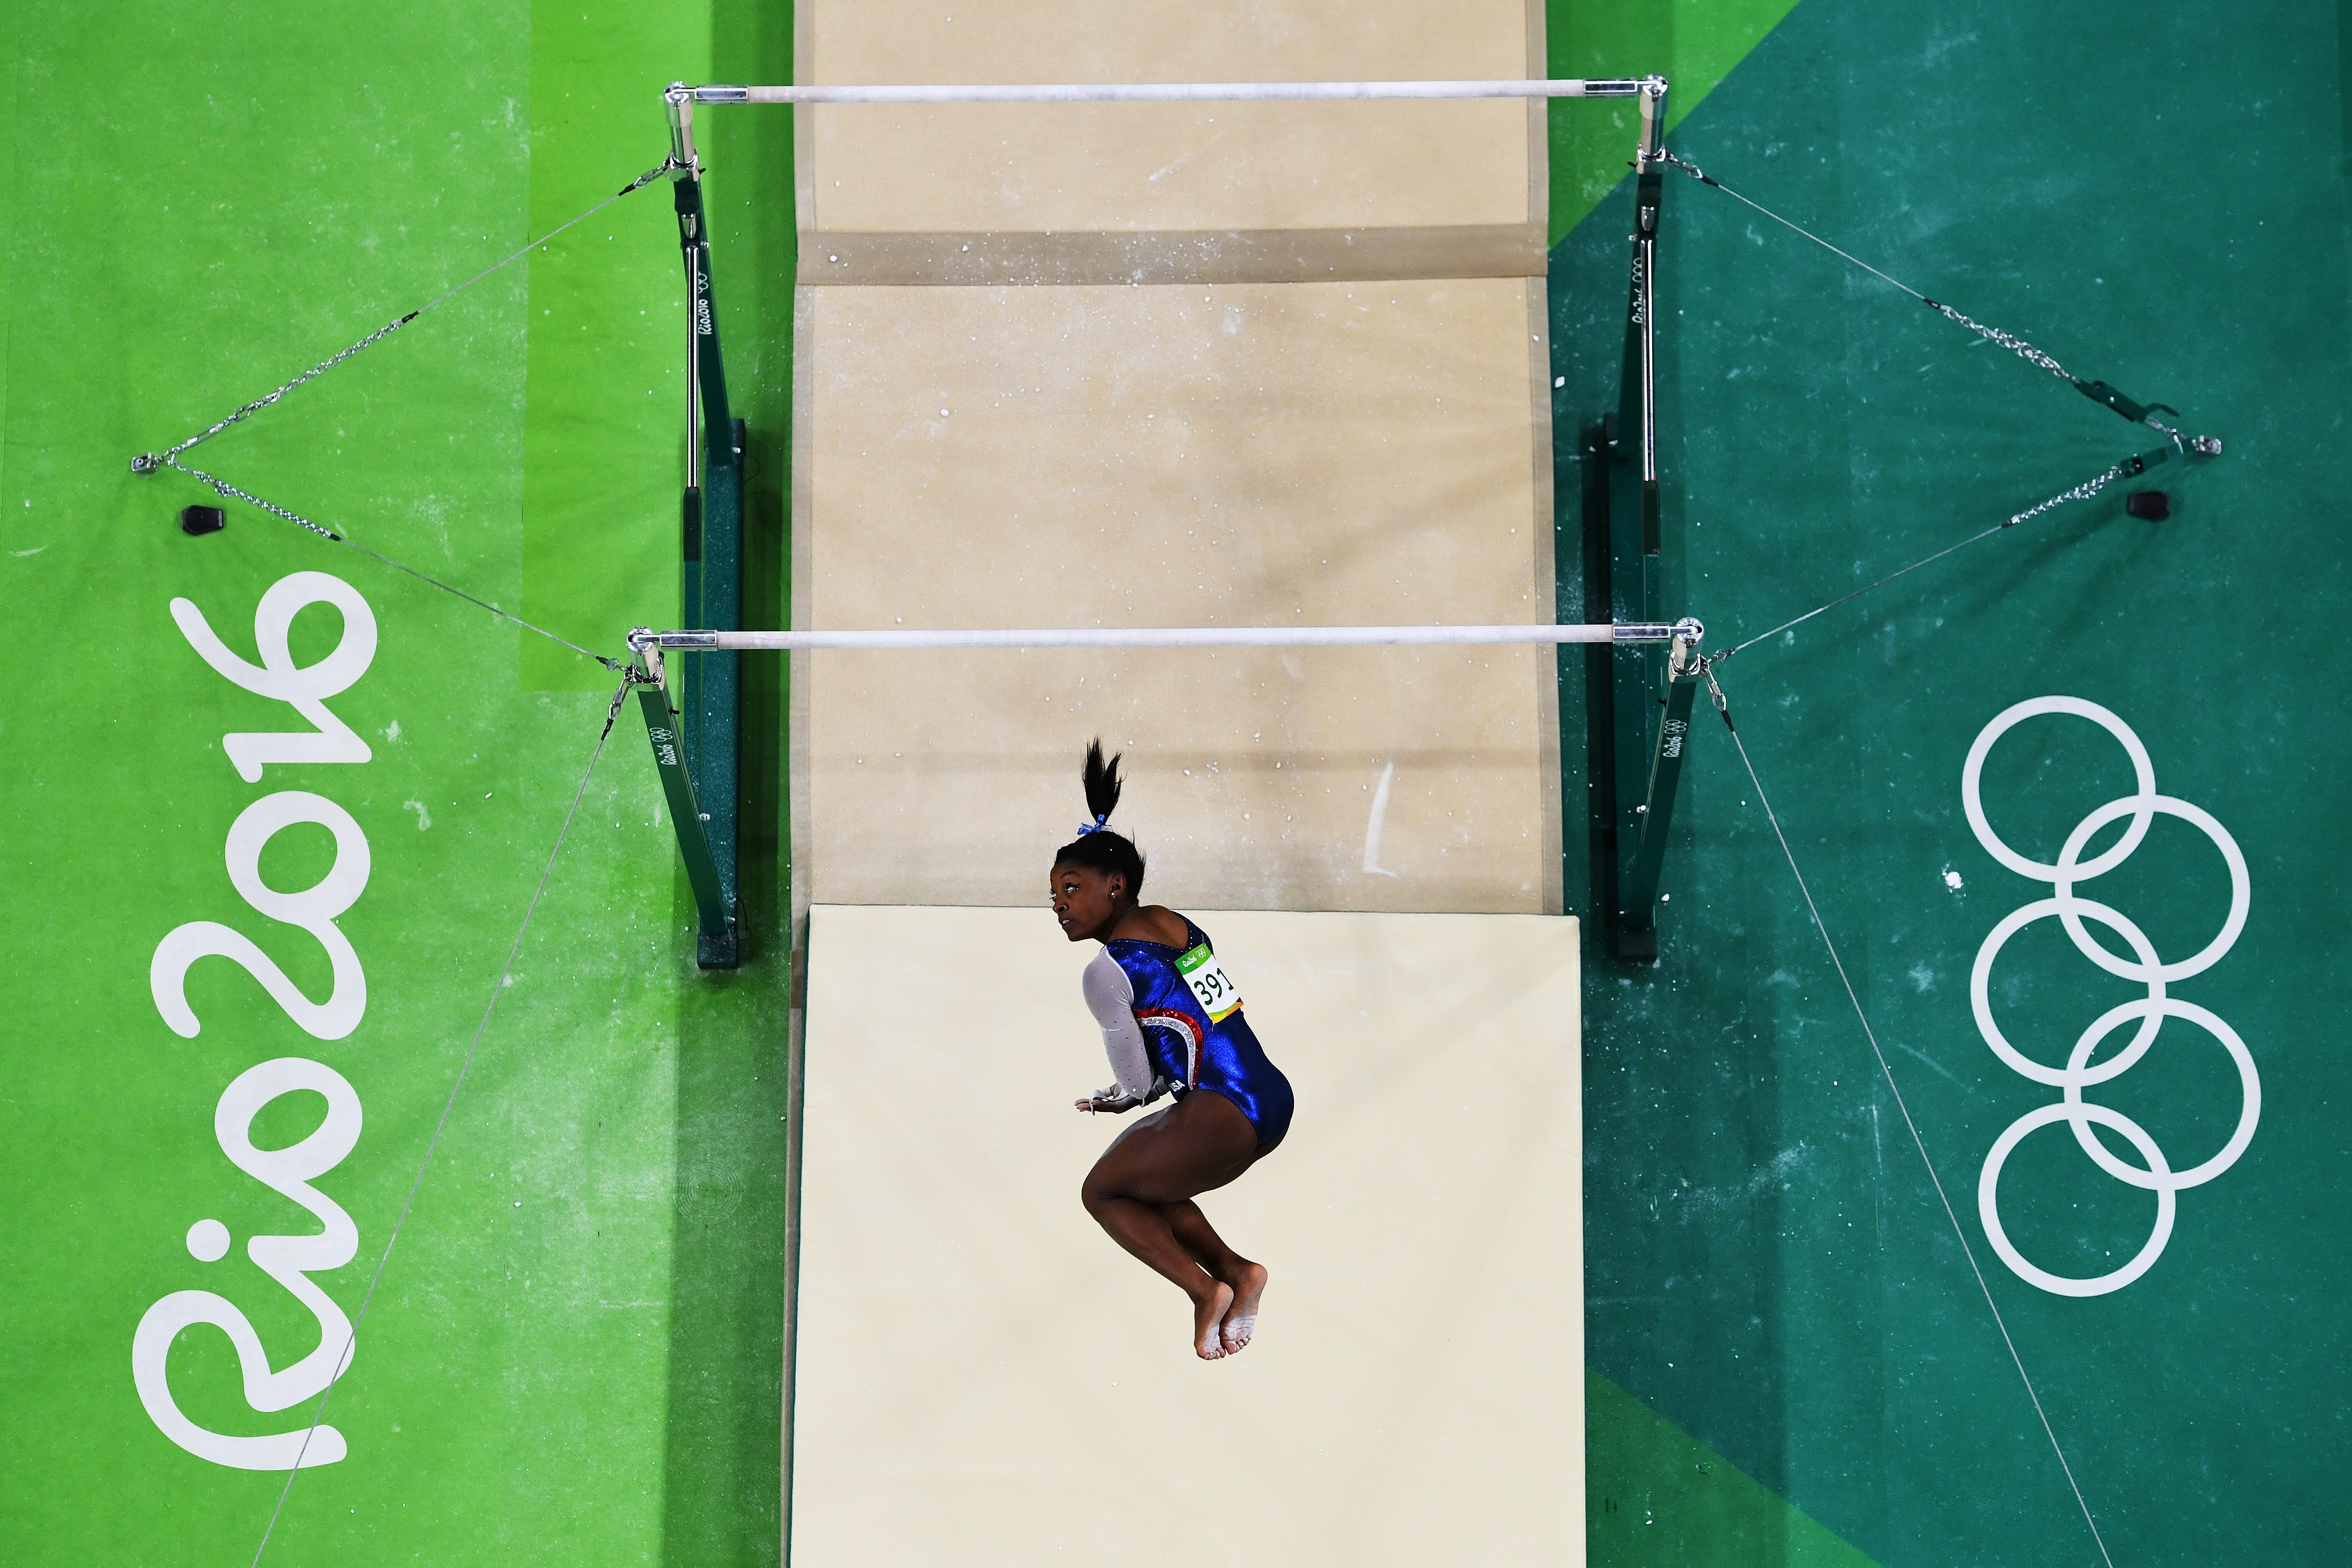 Състезателката по спортна гимнастика Симон Бейлс, за която хакери твърдят, че взема допинг, се представи отлично на Олимпийските игри в Рио, където завоюва четири златни медала. Тя носеше и флага на САЩ на церемонията по закриването на Игрите.